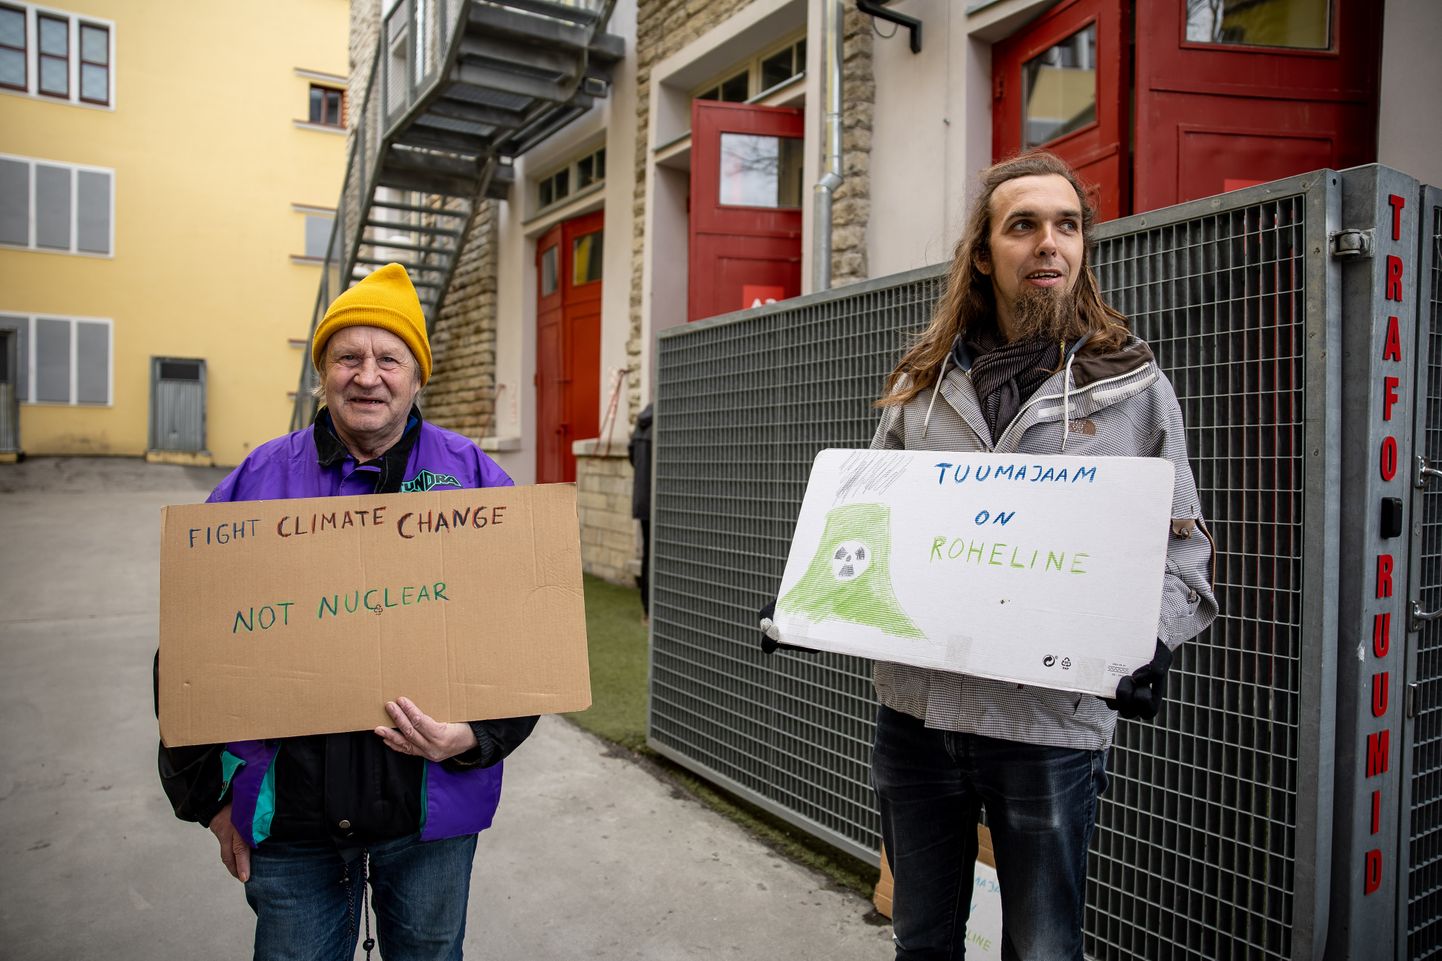 Tuumaelektrijaama pooldajate meeleavaldus Arhitektuurikeskuse ees. Meeleavalduse korraldas Mihkel Tiganik, kes seisab paremal. Foto: Sander Ilvest, Postimees